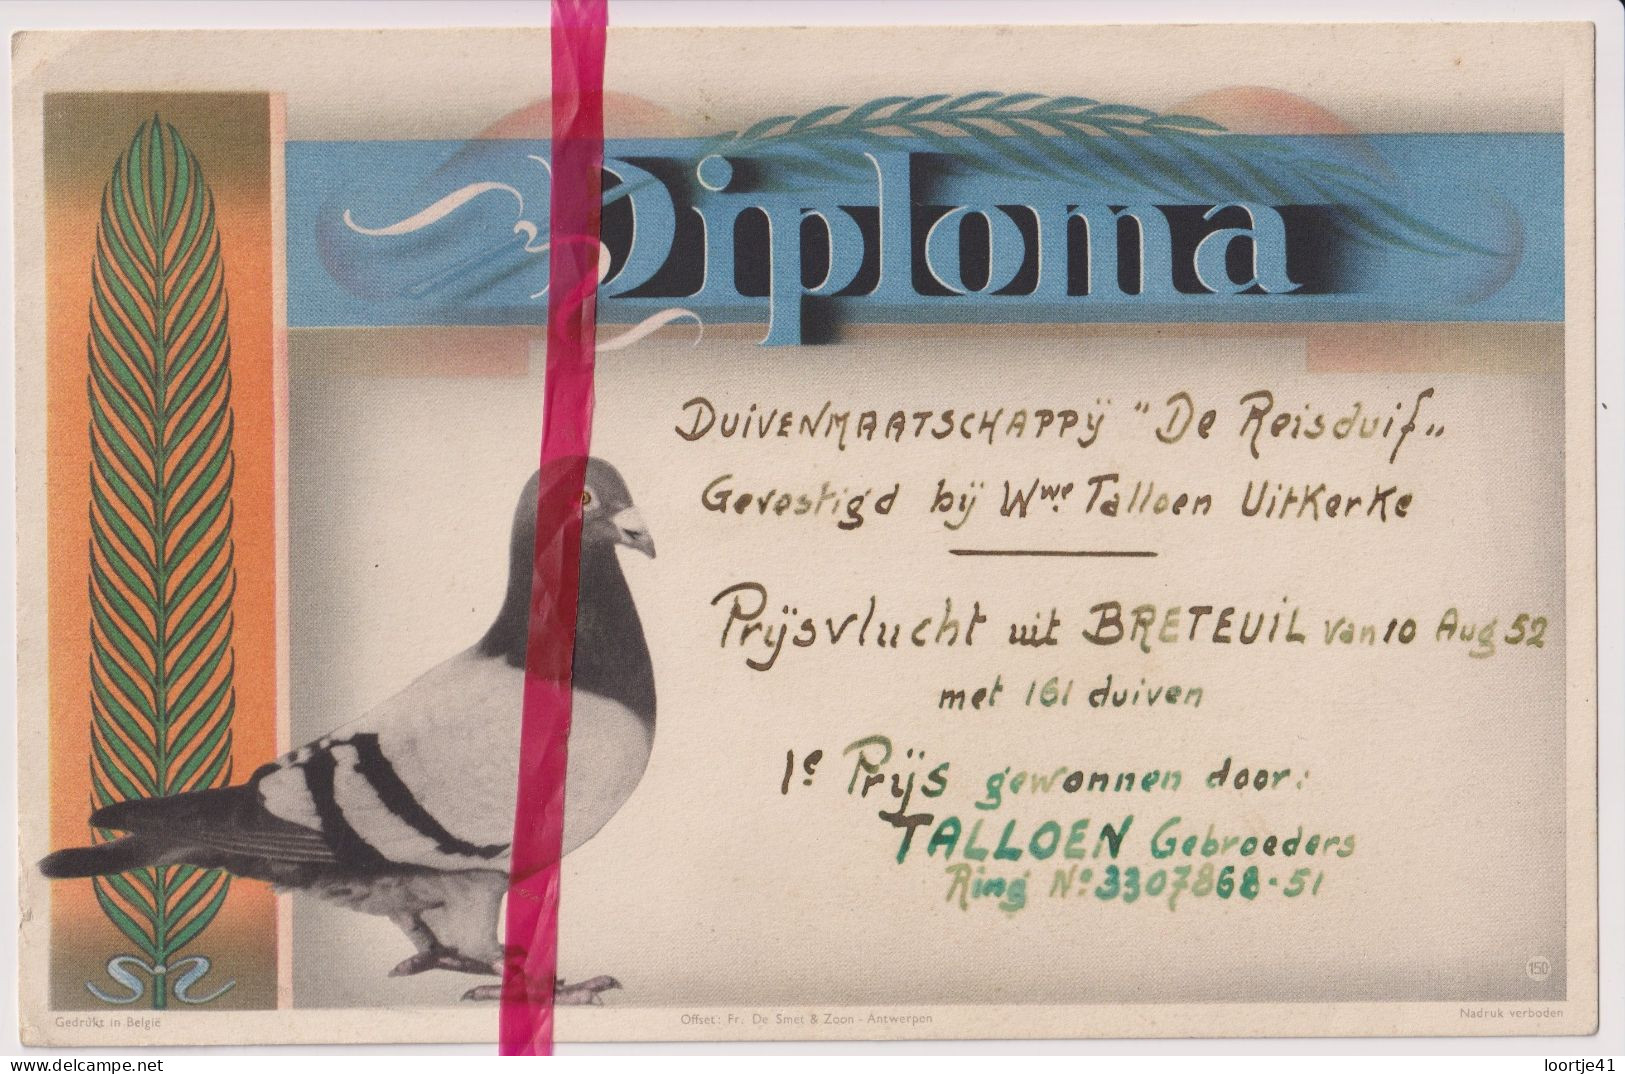 Diploma Duiven 1° Prijs Talloen Gebrs - Uitkerke 1952 - Maatschappij De Reisduif - Diploma's En Schoolrapporten